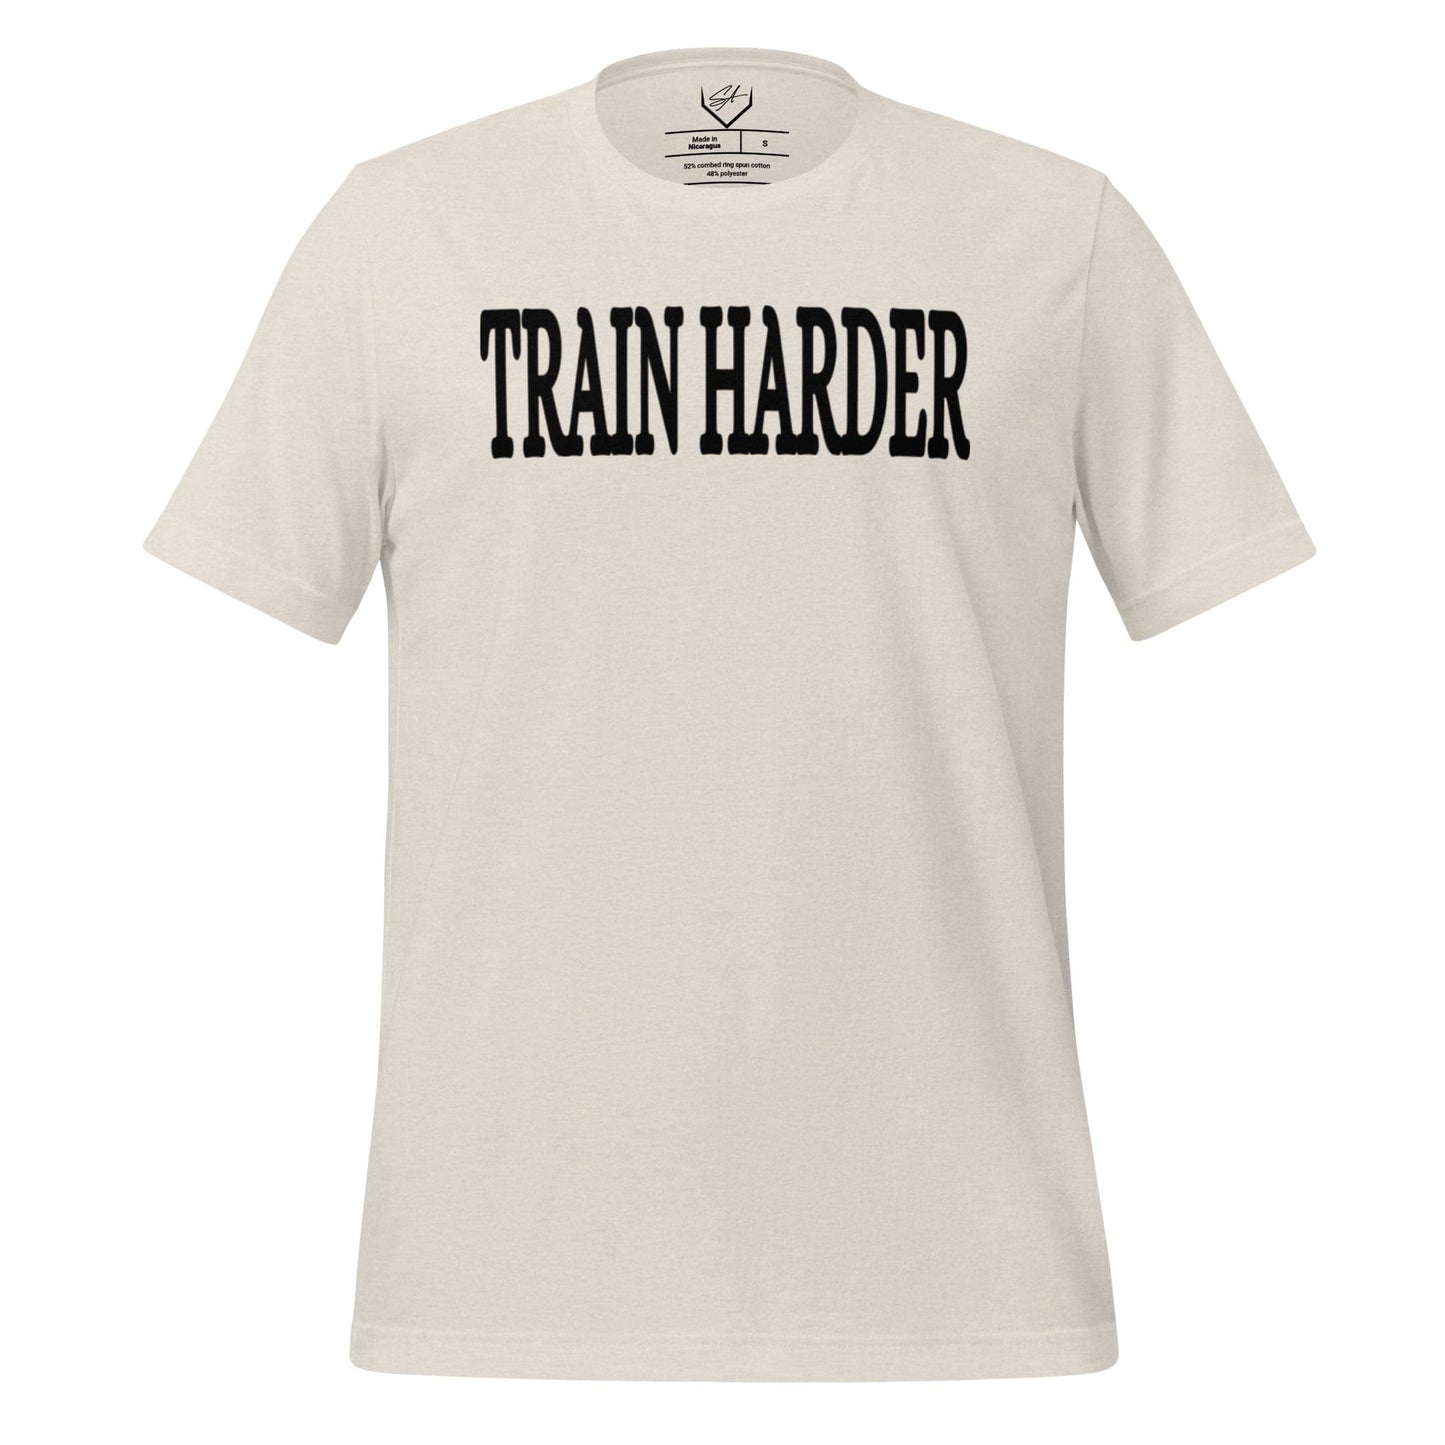 Train Harder - Adult Tee